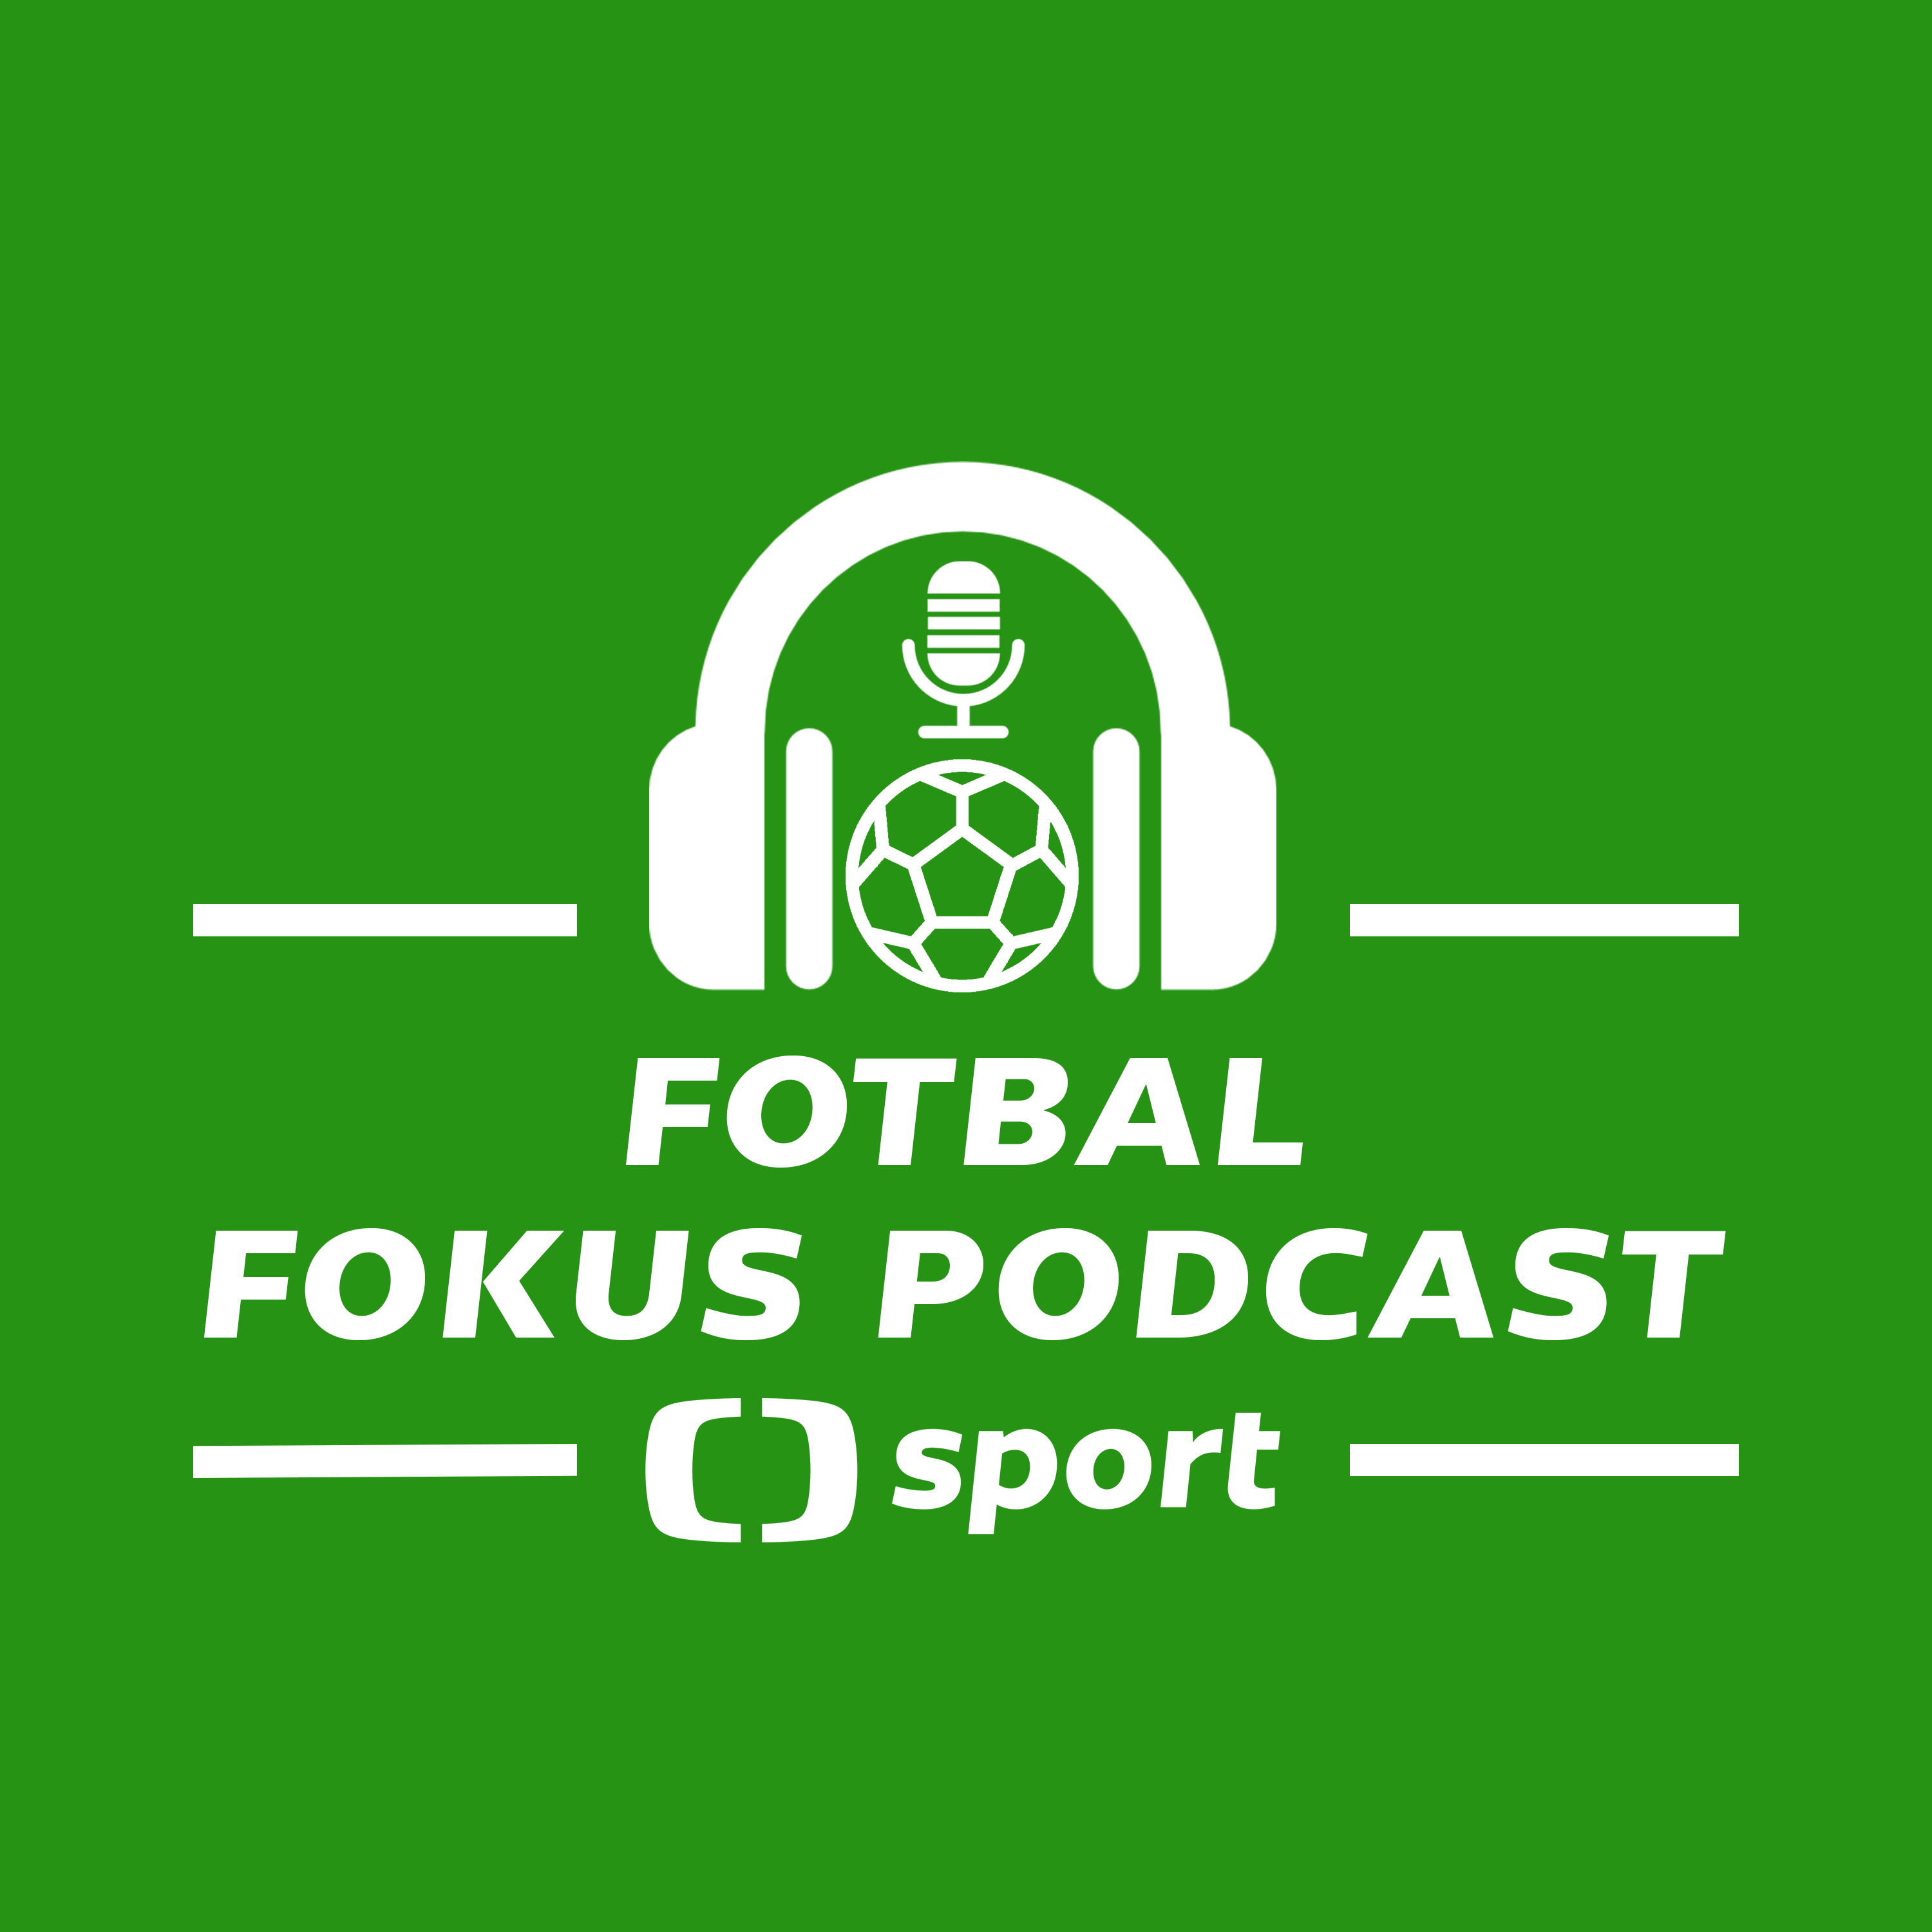 Fotbal fokus podcast: Macíkova minela, restart Žižkova, Plzeň i Sparta před pohárem